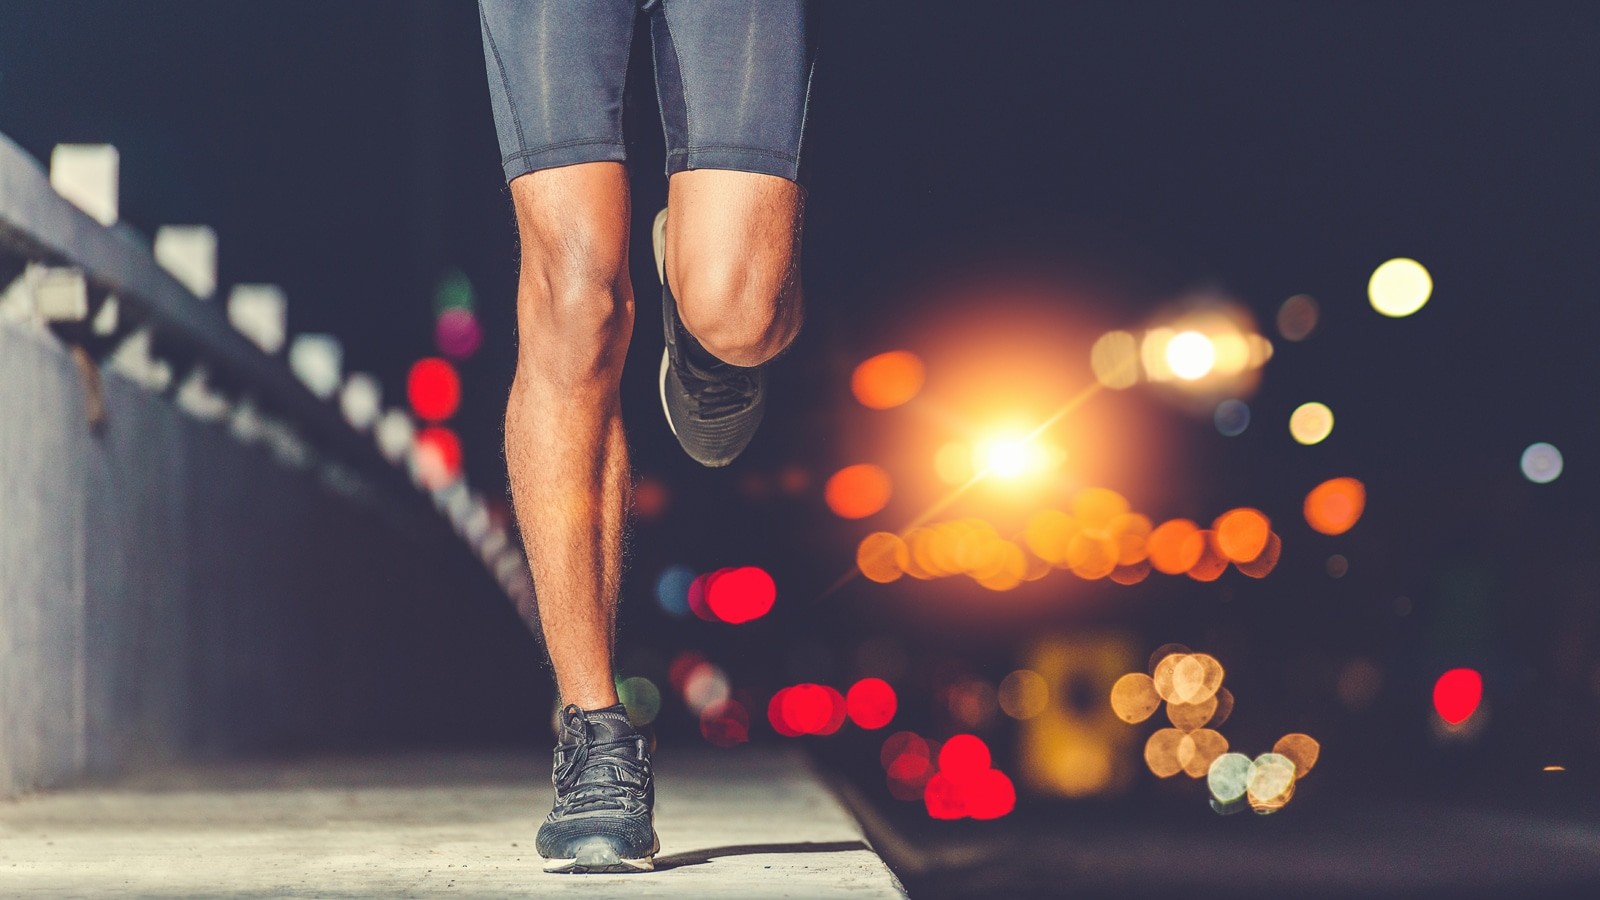 10 điều mà các nhà lãnh đạo có thể học từ người chạy bộ là gì?